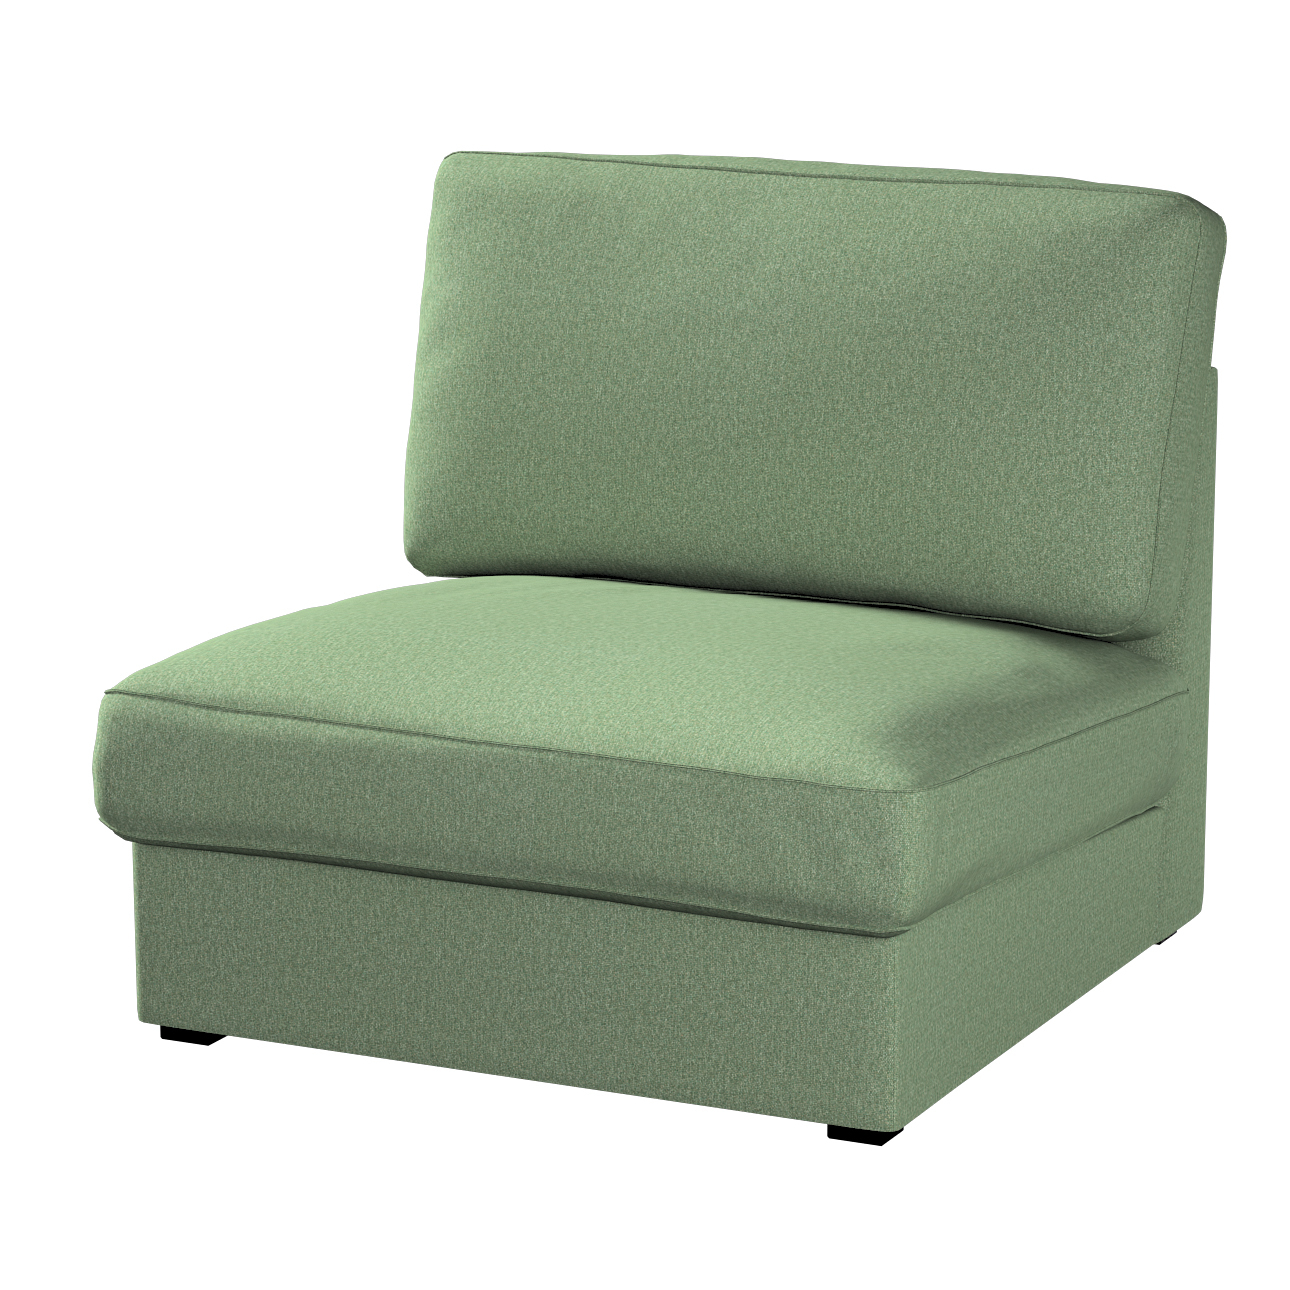 Bezug für Kivik Sessel nicht ausklappbar, grün, Bezug für Sessel Kivik, Ams günstig online kaufen